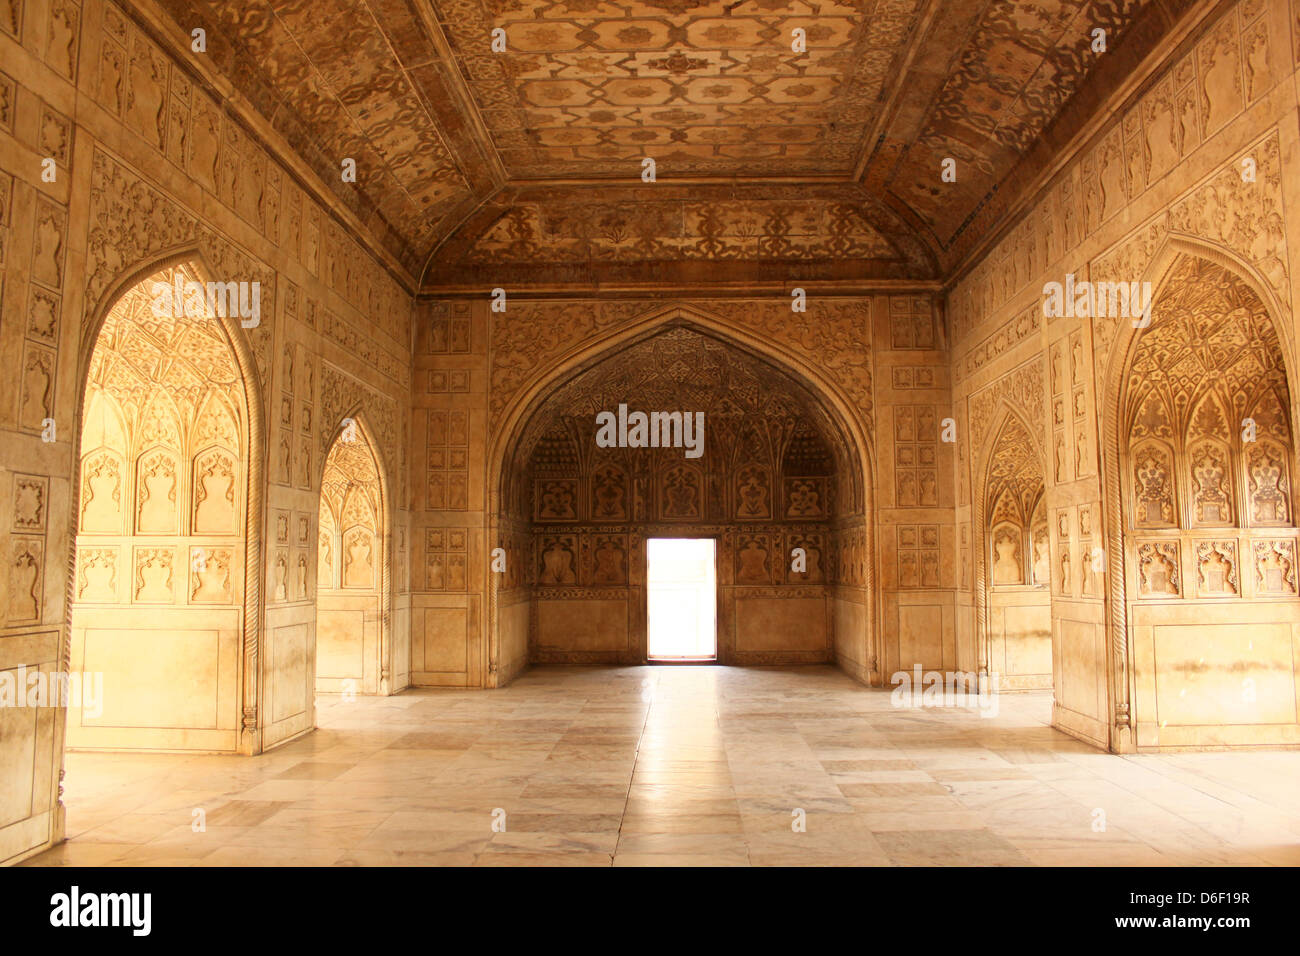 Prinzessin Schlafzimmer, sehr reich verzierte Interieur des Agra Fort UNESCO Weltkulturerbe Agra, Uttar Pradesh, Indien Stockfoto